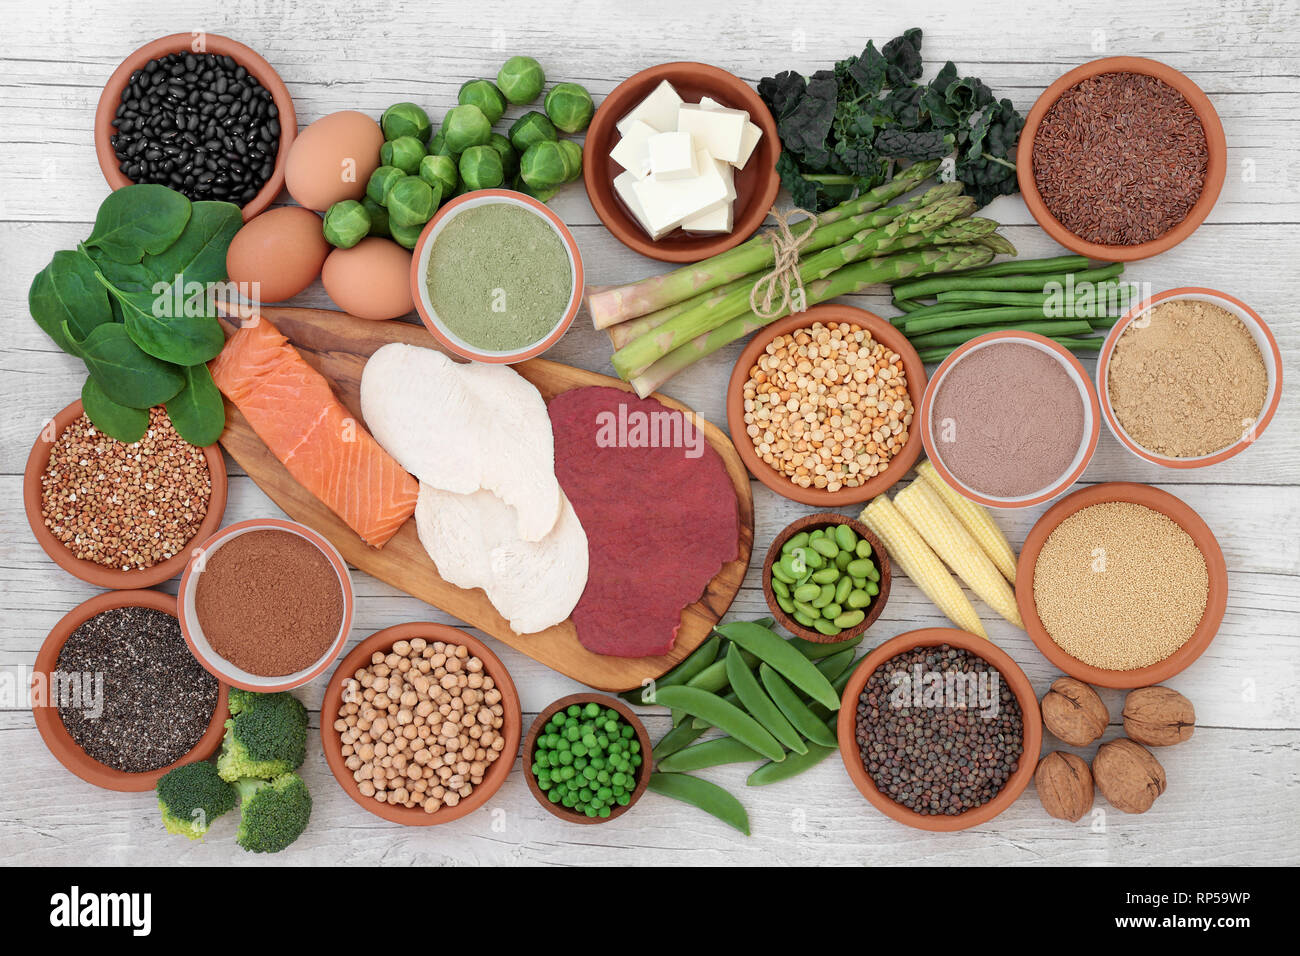 Proteinreiche Lebensmittel Sampler mit frischem Gemüse, Fleisch, Fisch, Tofu, Hülsenfrüchte, Nüsse, Ergänzung von Pulver, Körnern und Samen. Stockfoto